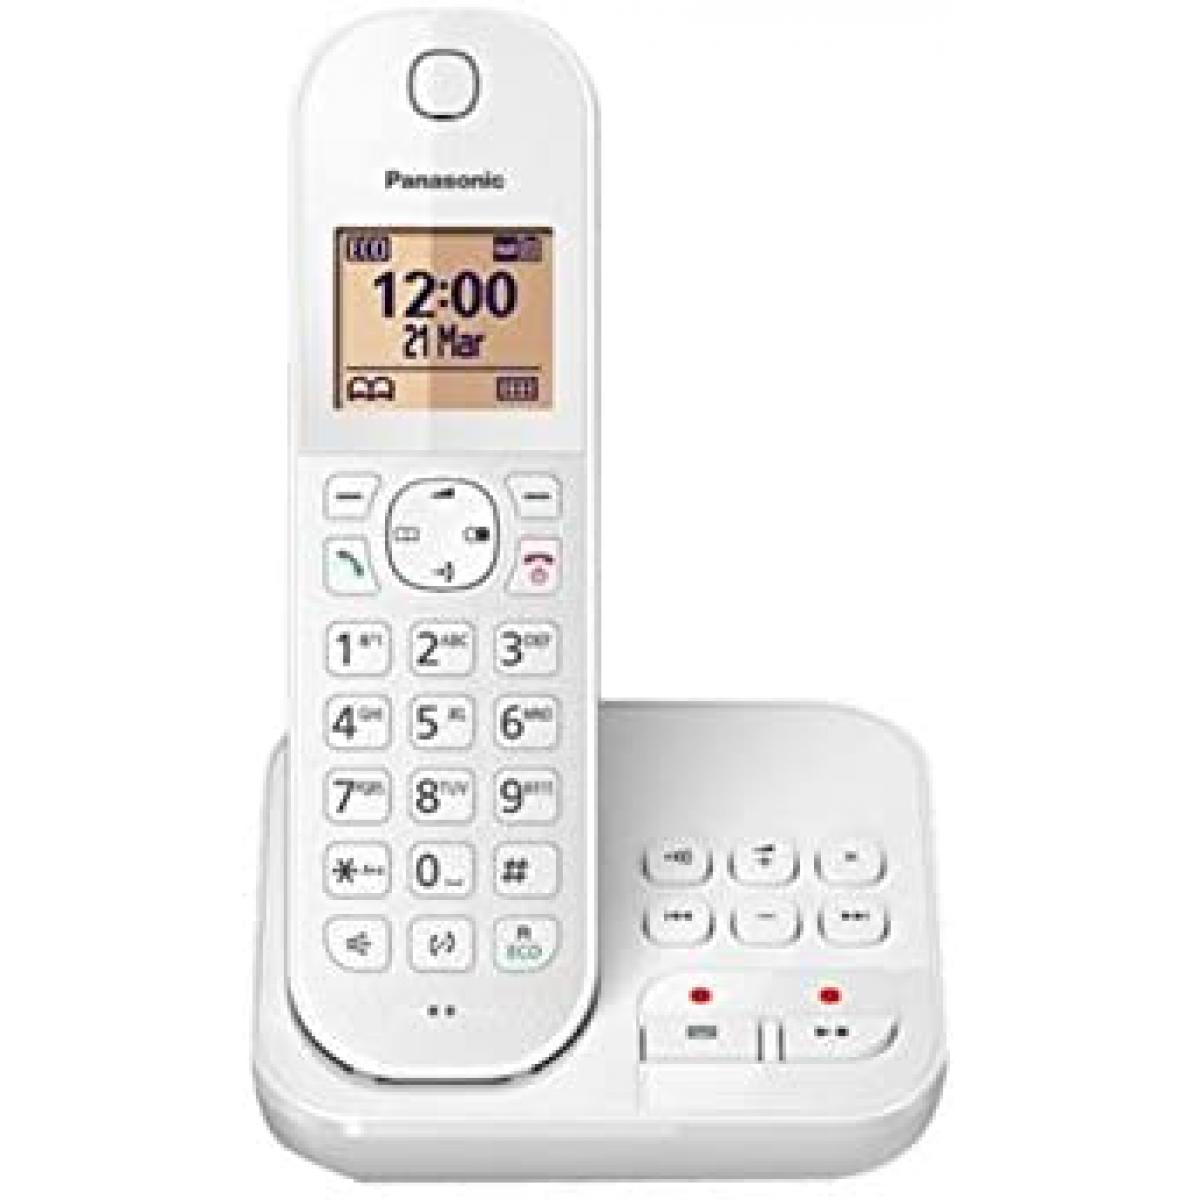 Panasonic - Rasage Electrique - telephone sans Fil dect avec répondeur blanc - Téléphone fixe-répondeur